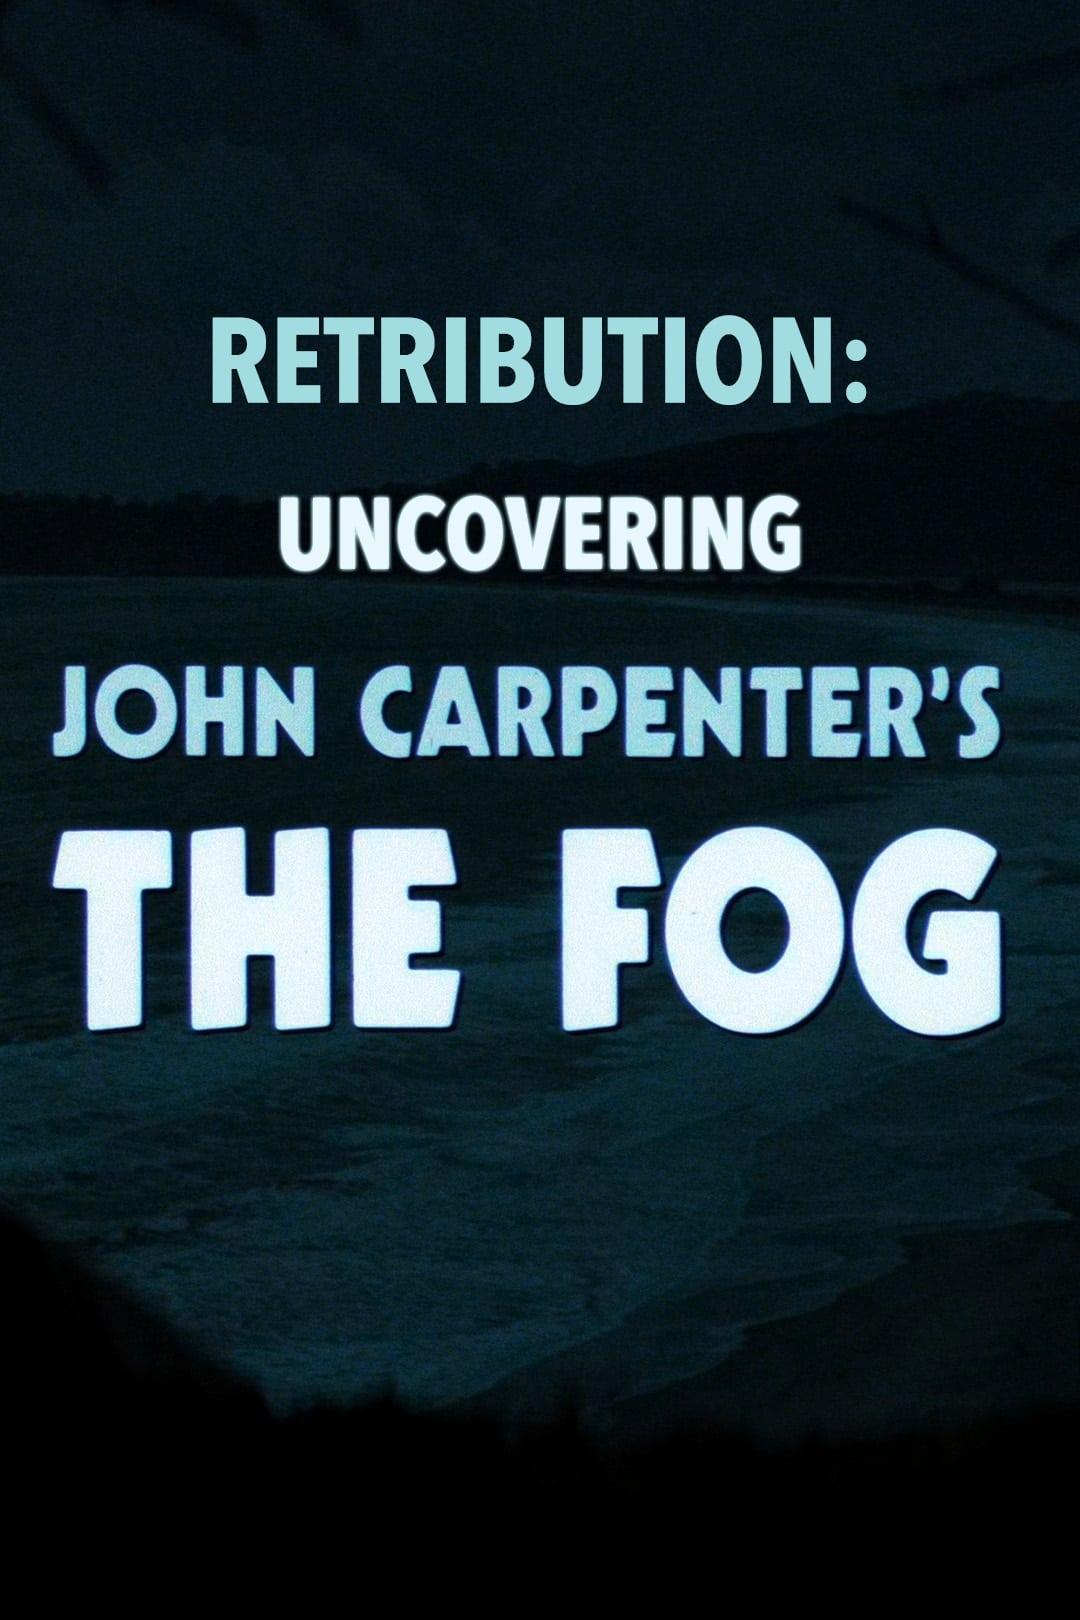 Retribution: Uncovering John Carpenter's 'The Fog' poster